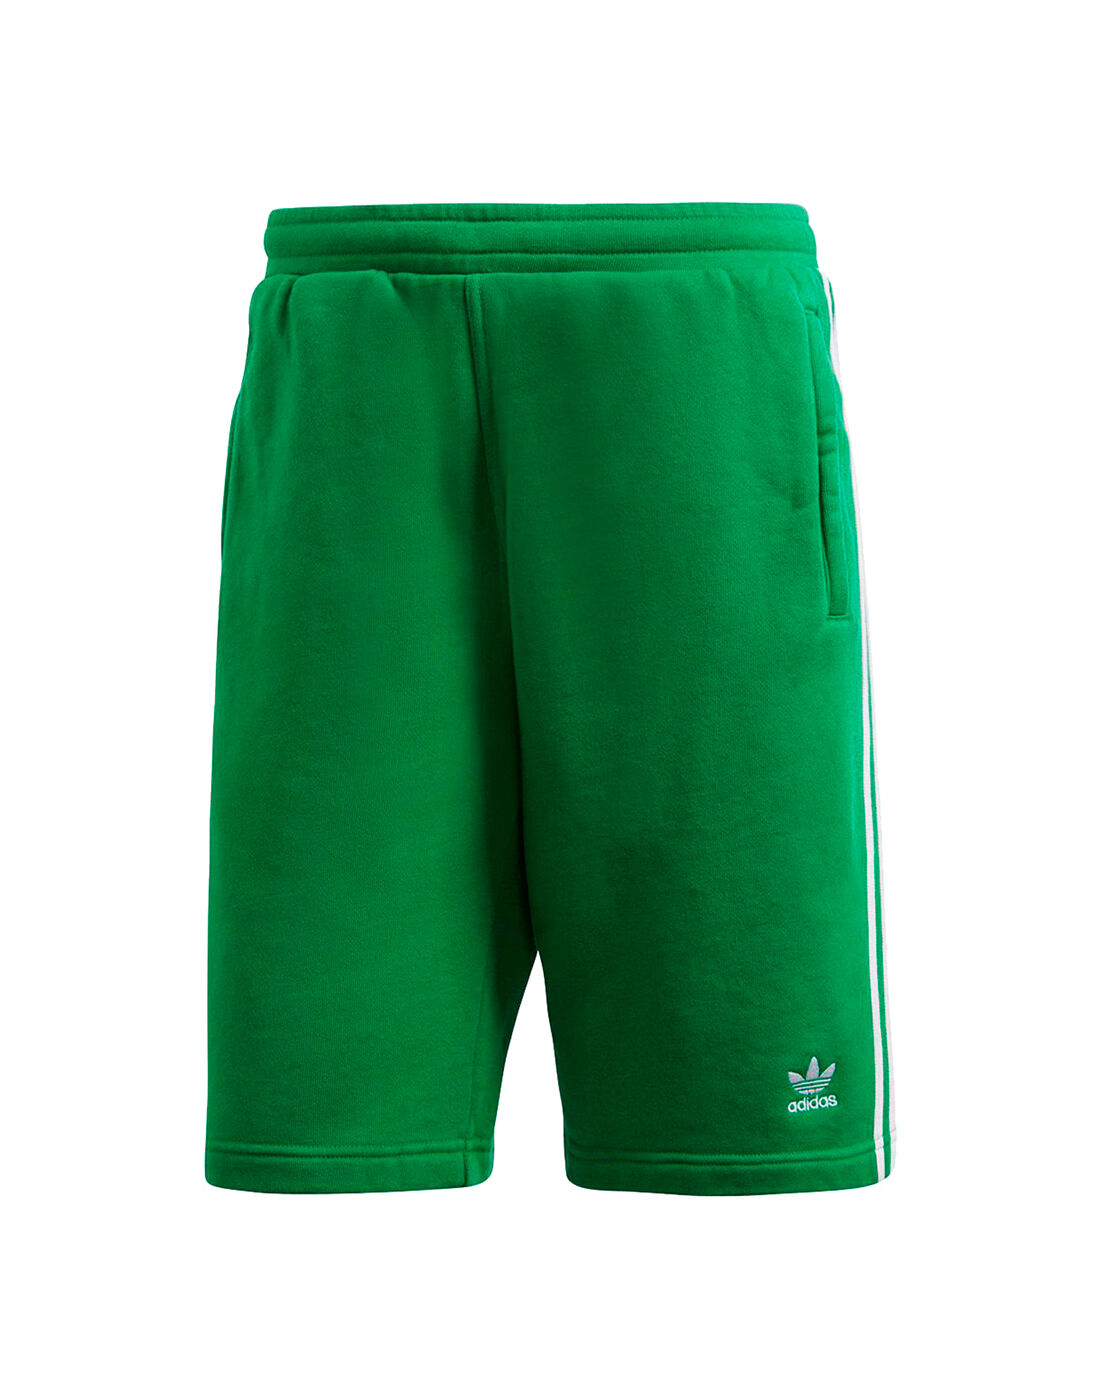 green adidas shorts mens